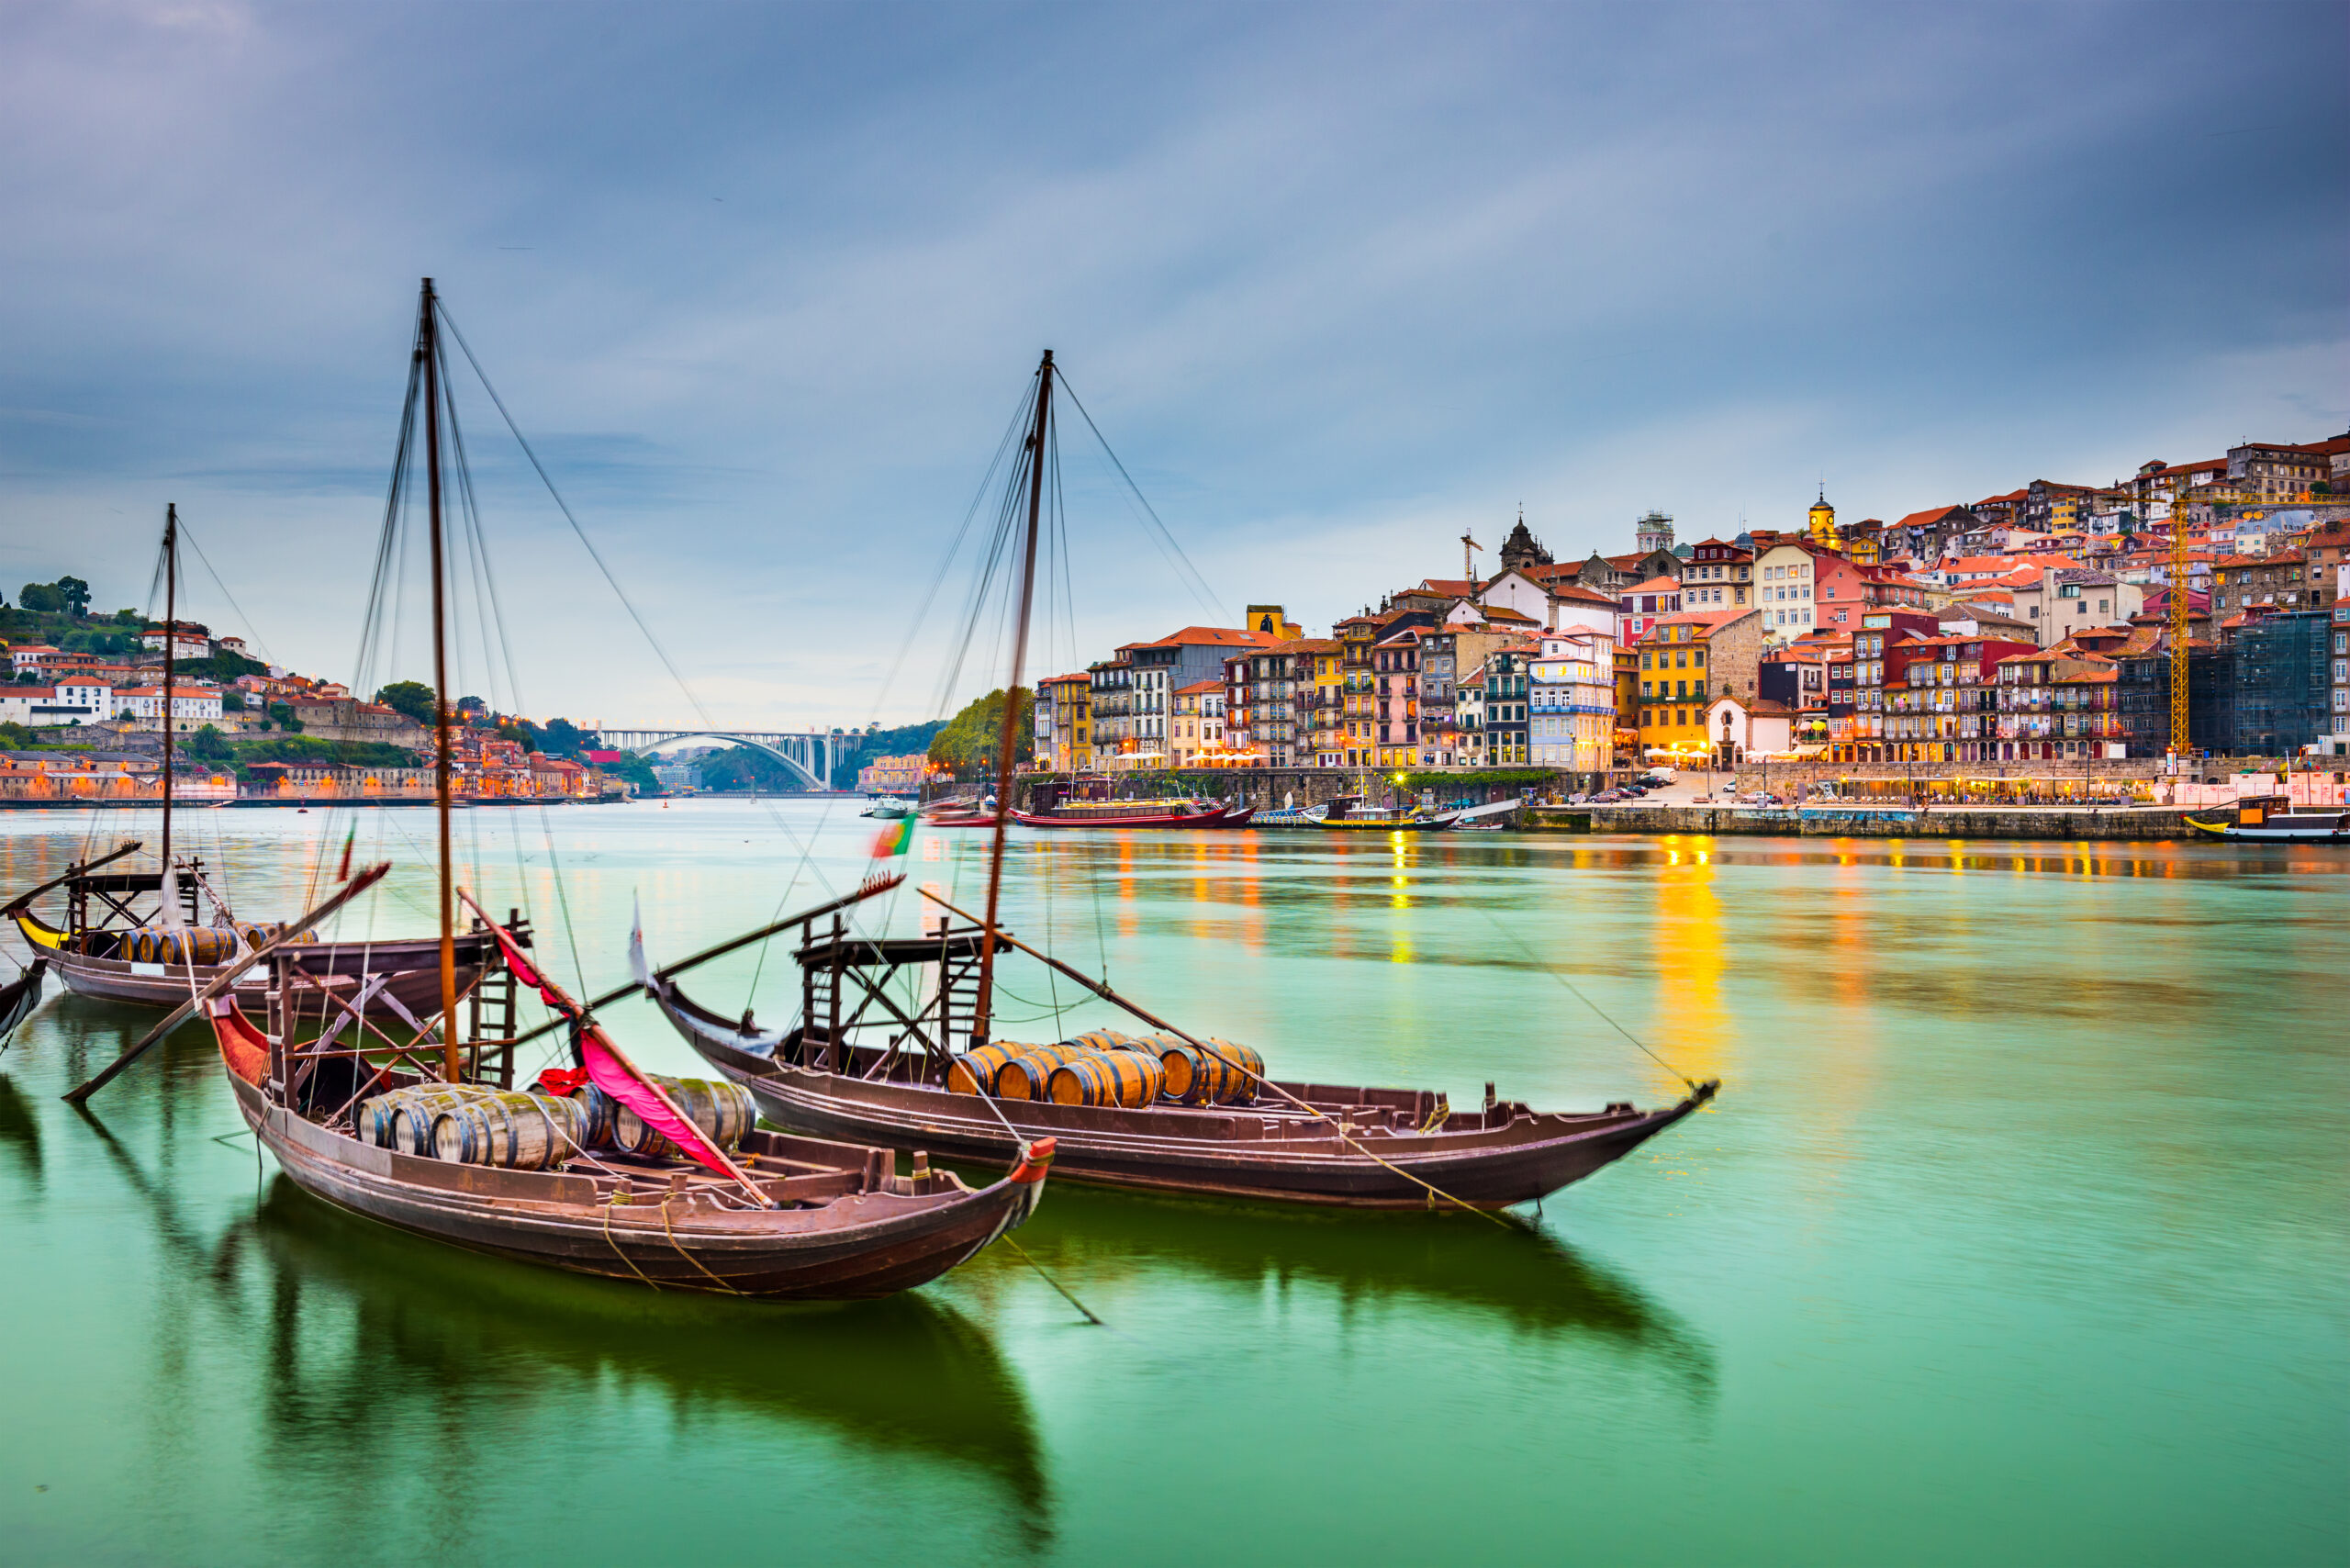 Peisajul vechi al orașului Portugaliei de pe râul Douro cu bărci tradiționale Rabelo